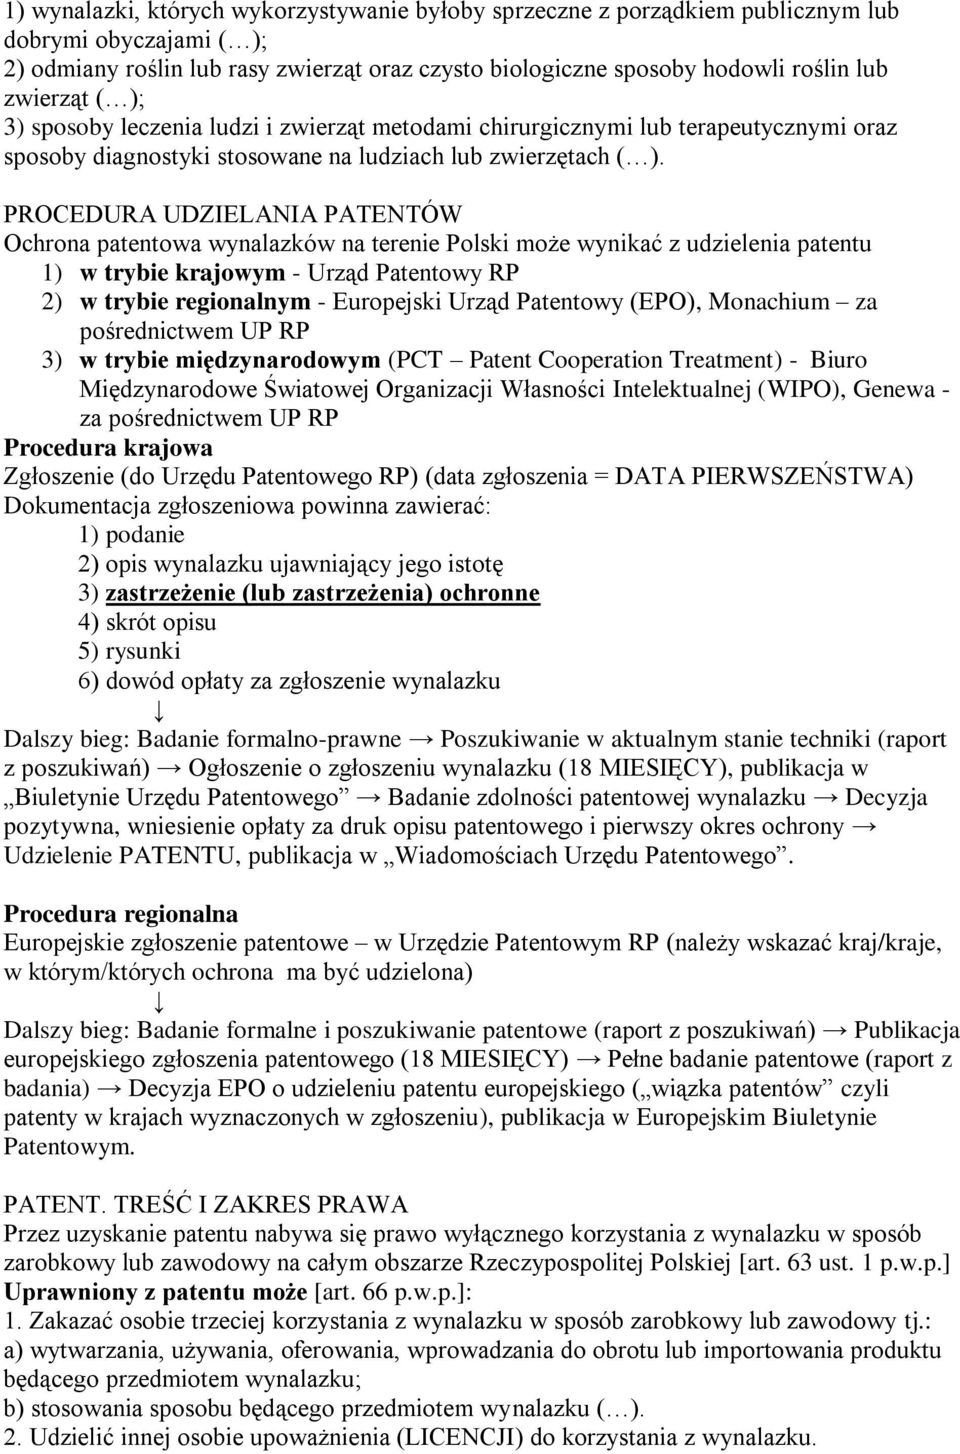 PROCEDURA UDZIELANIA PATENTÓW Ochrona patentowa wynalazków na terenie Polski może wynikać z udzielenia patentu 1) w trybie krajowym - Urząd Patentowy RP 2) w trybie regionalnym - Europejski Urząd